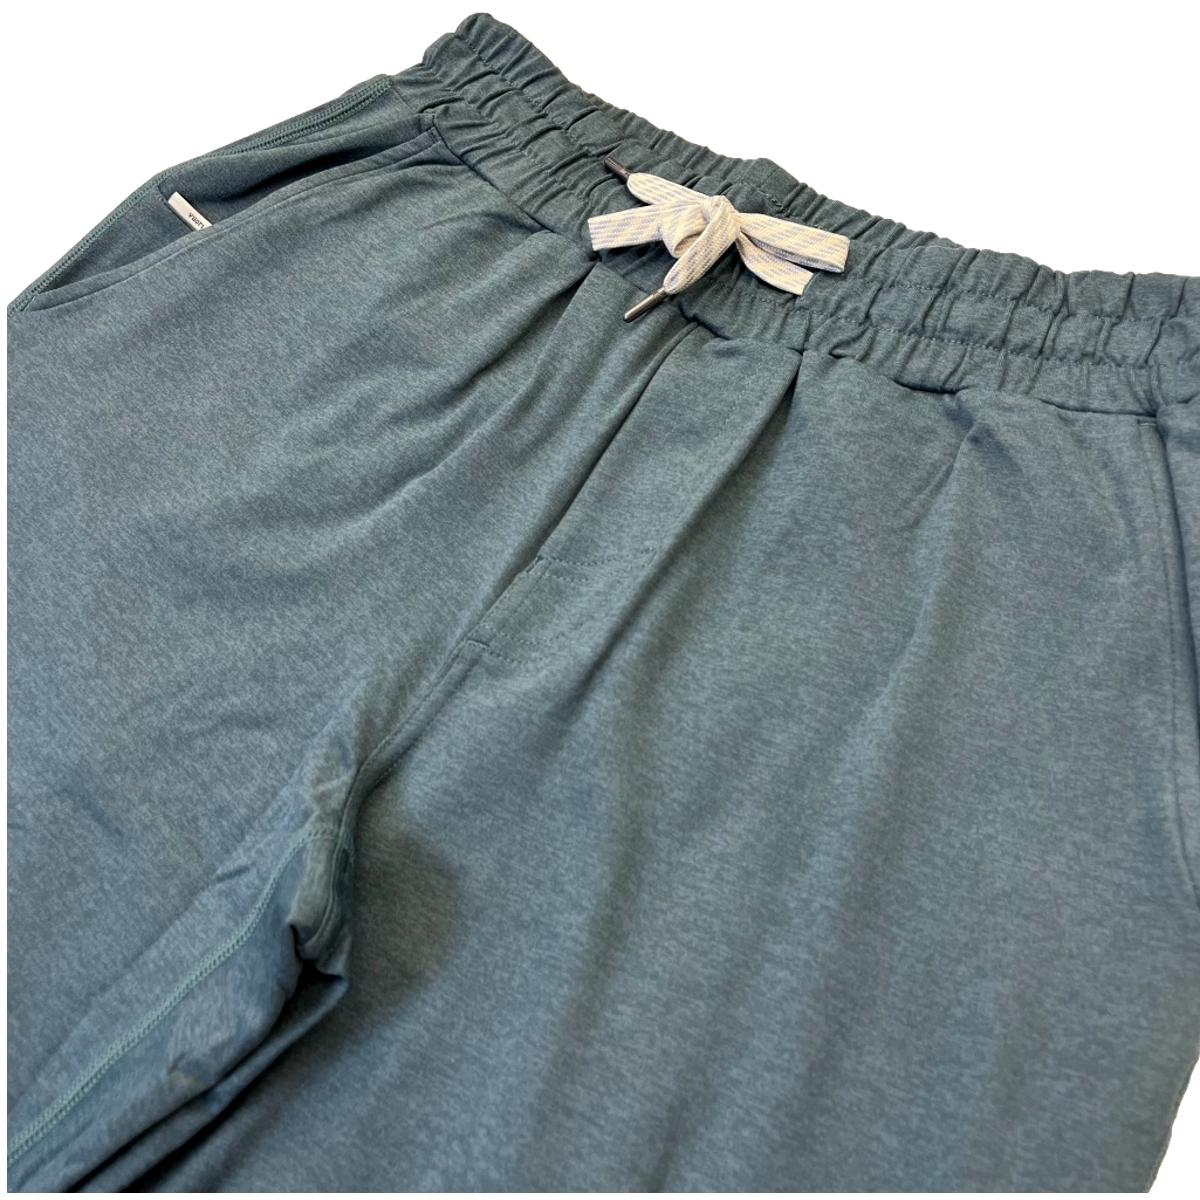 Vuori Clothing Men's Ponto Performance Pants V418